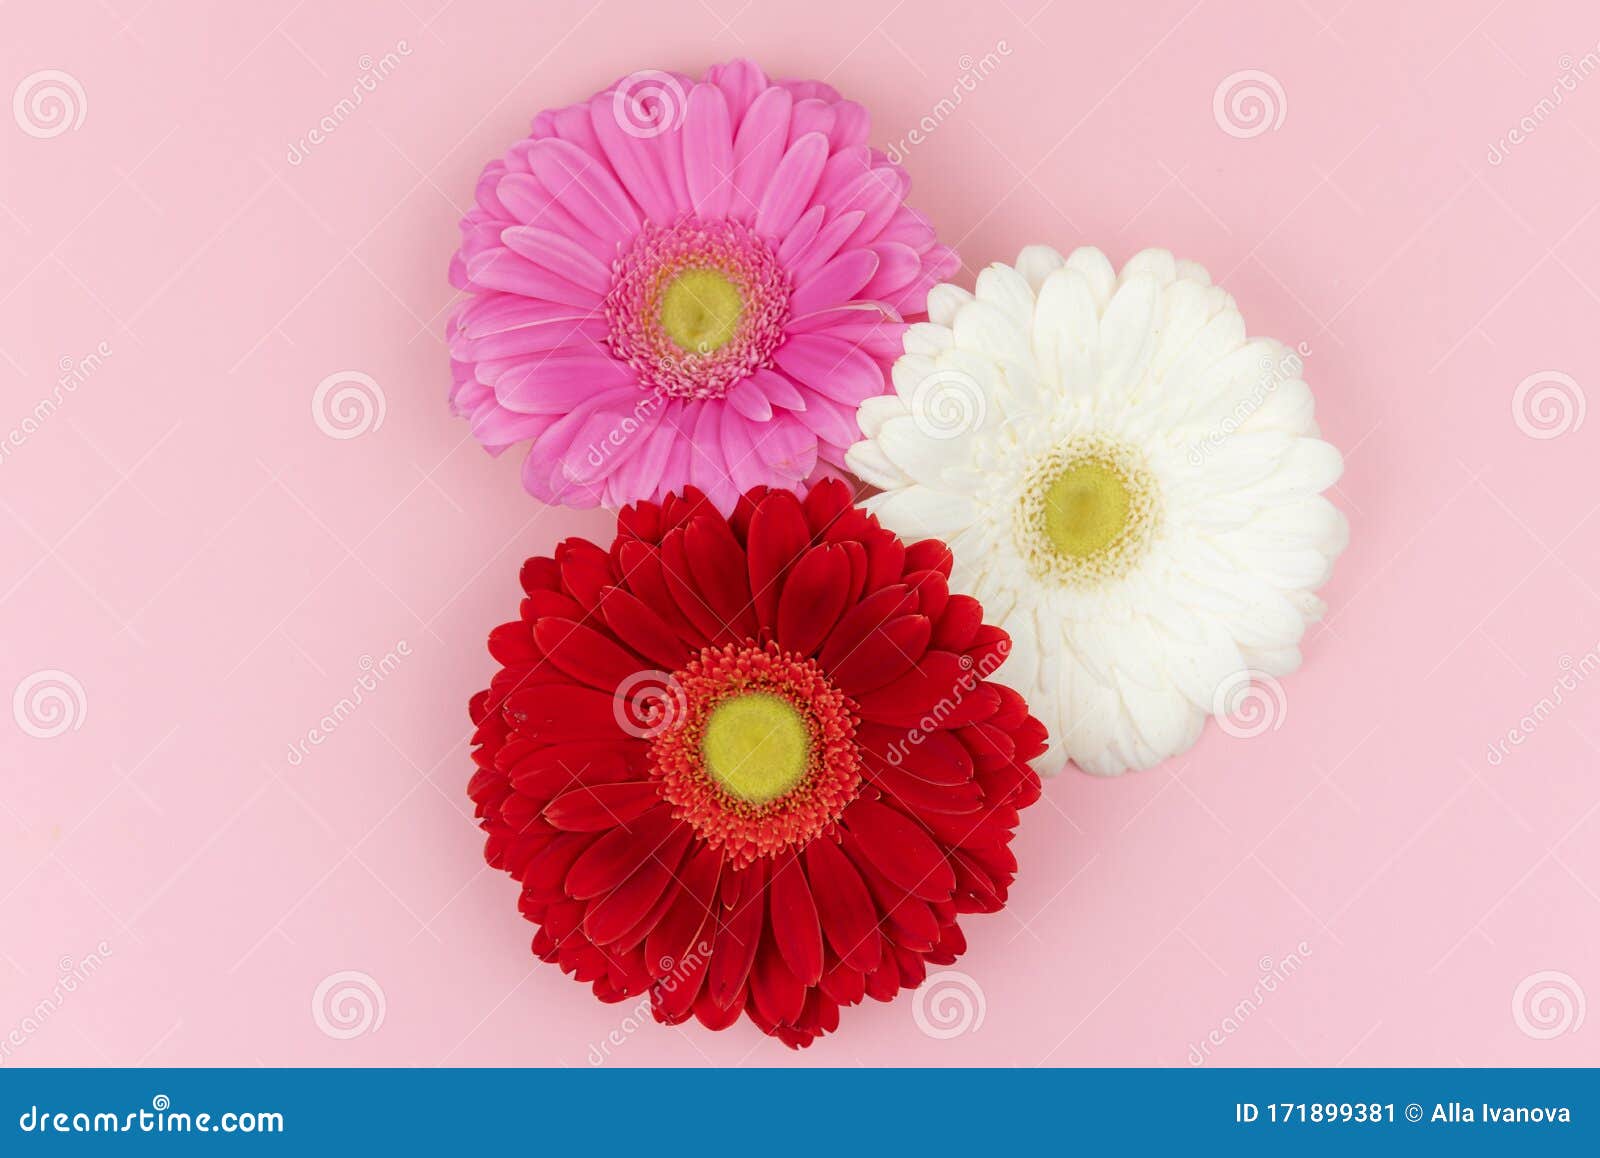 Flores Gerberas Rojas, Rosas Y Blancas En Un Fondo Rosa Pastel Tarjeta De  Saludo De Primavera O Verano Día De San Valentín Imagen de archivo - Imagen  de endecha, marzo: 171899381